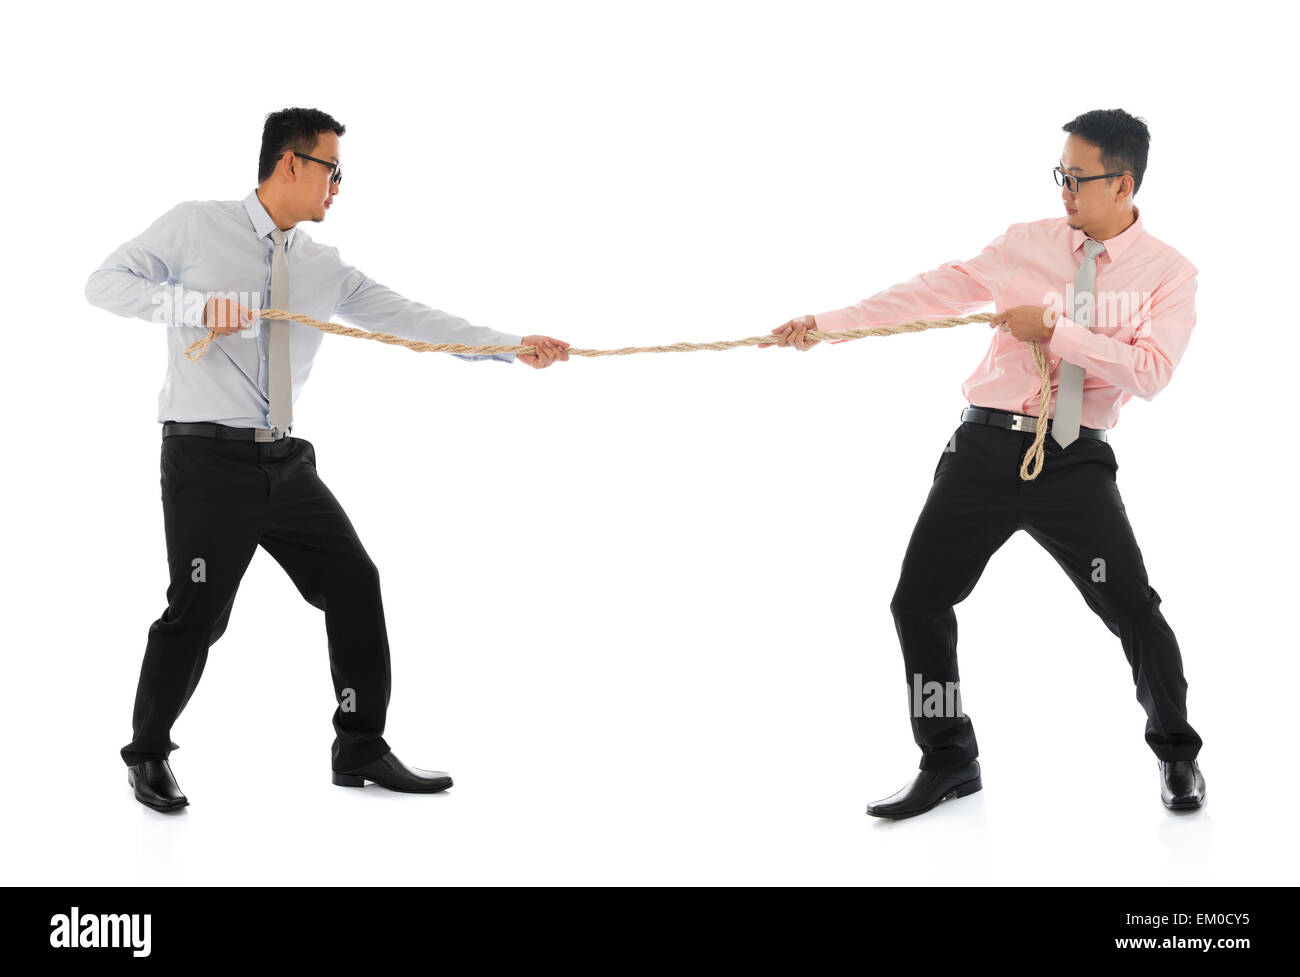 Deux hommes d'Asie tirant une corde Banque D'Images